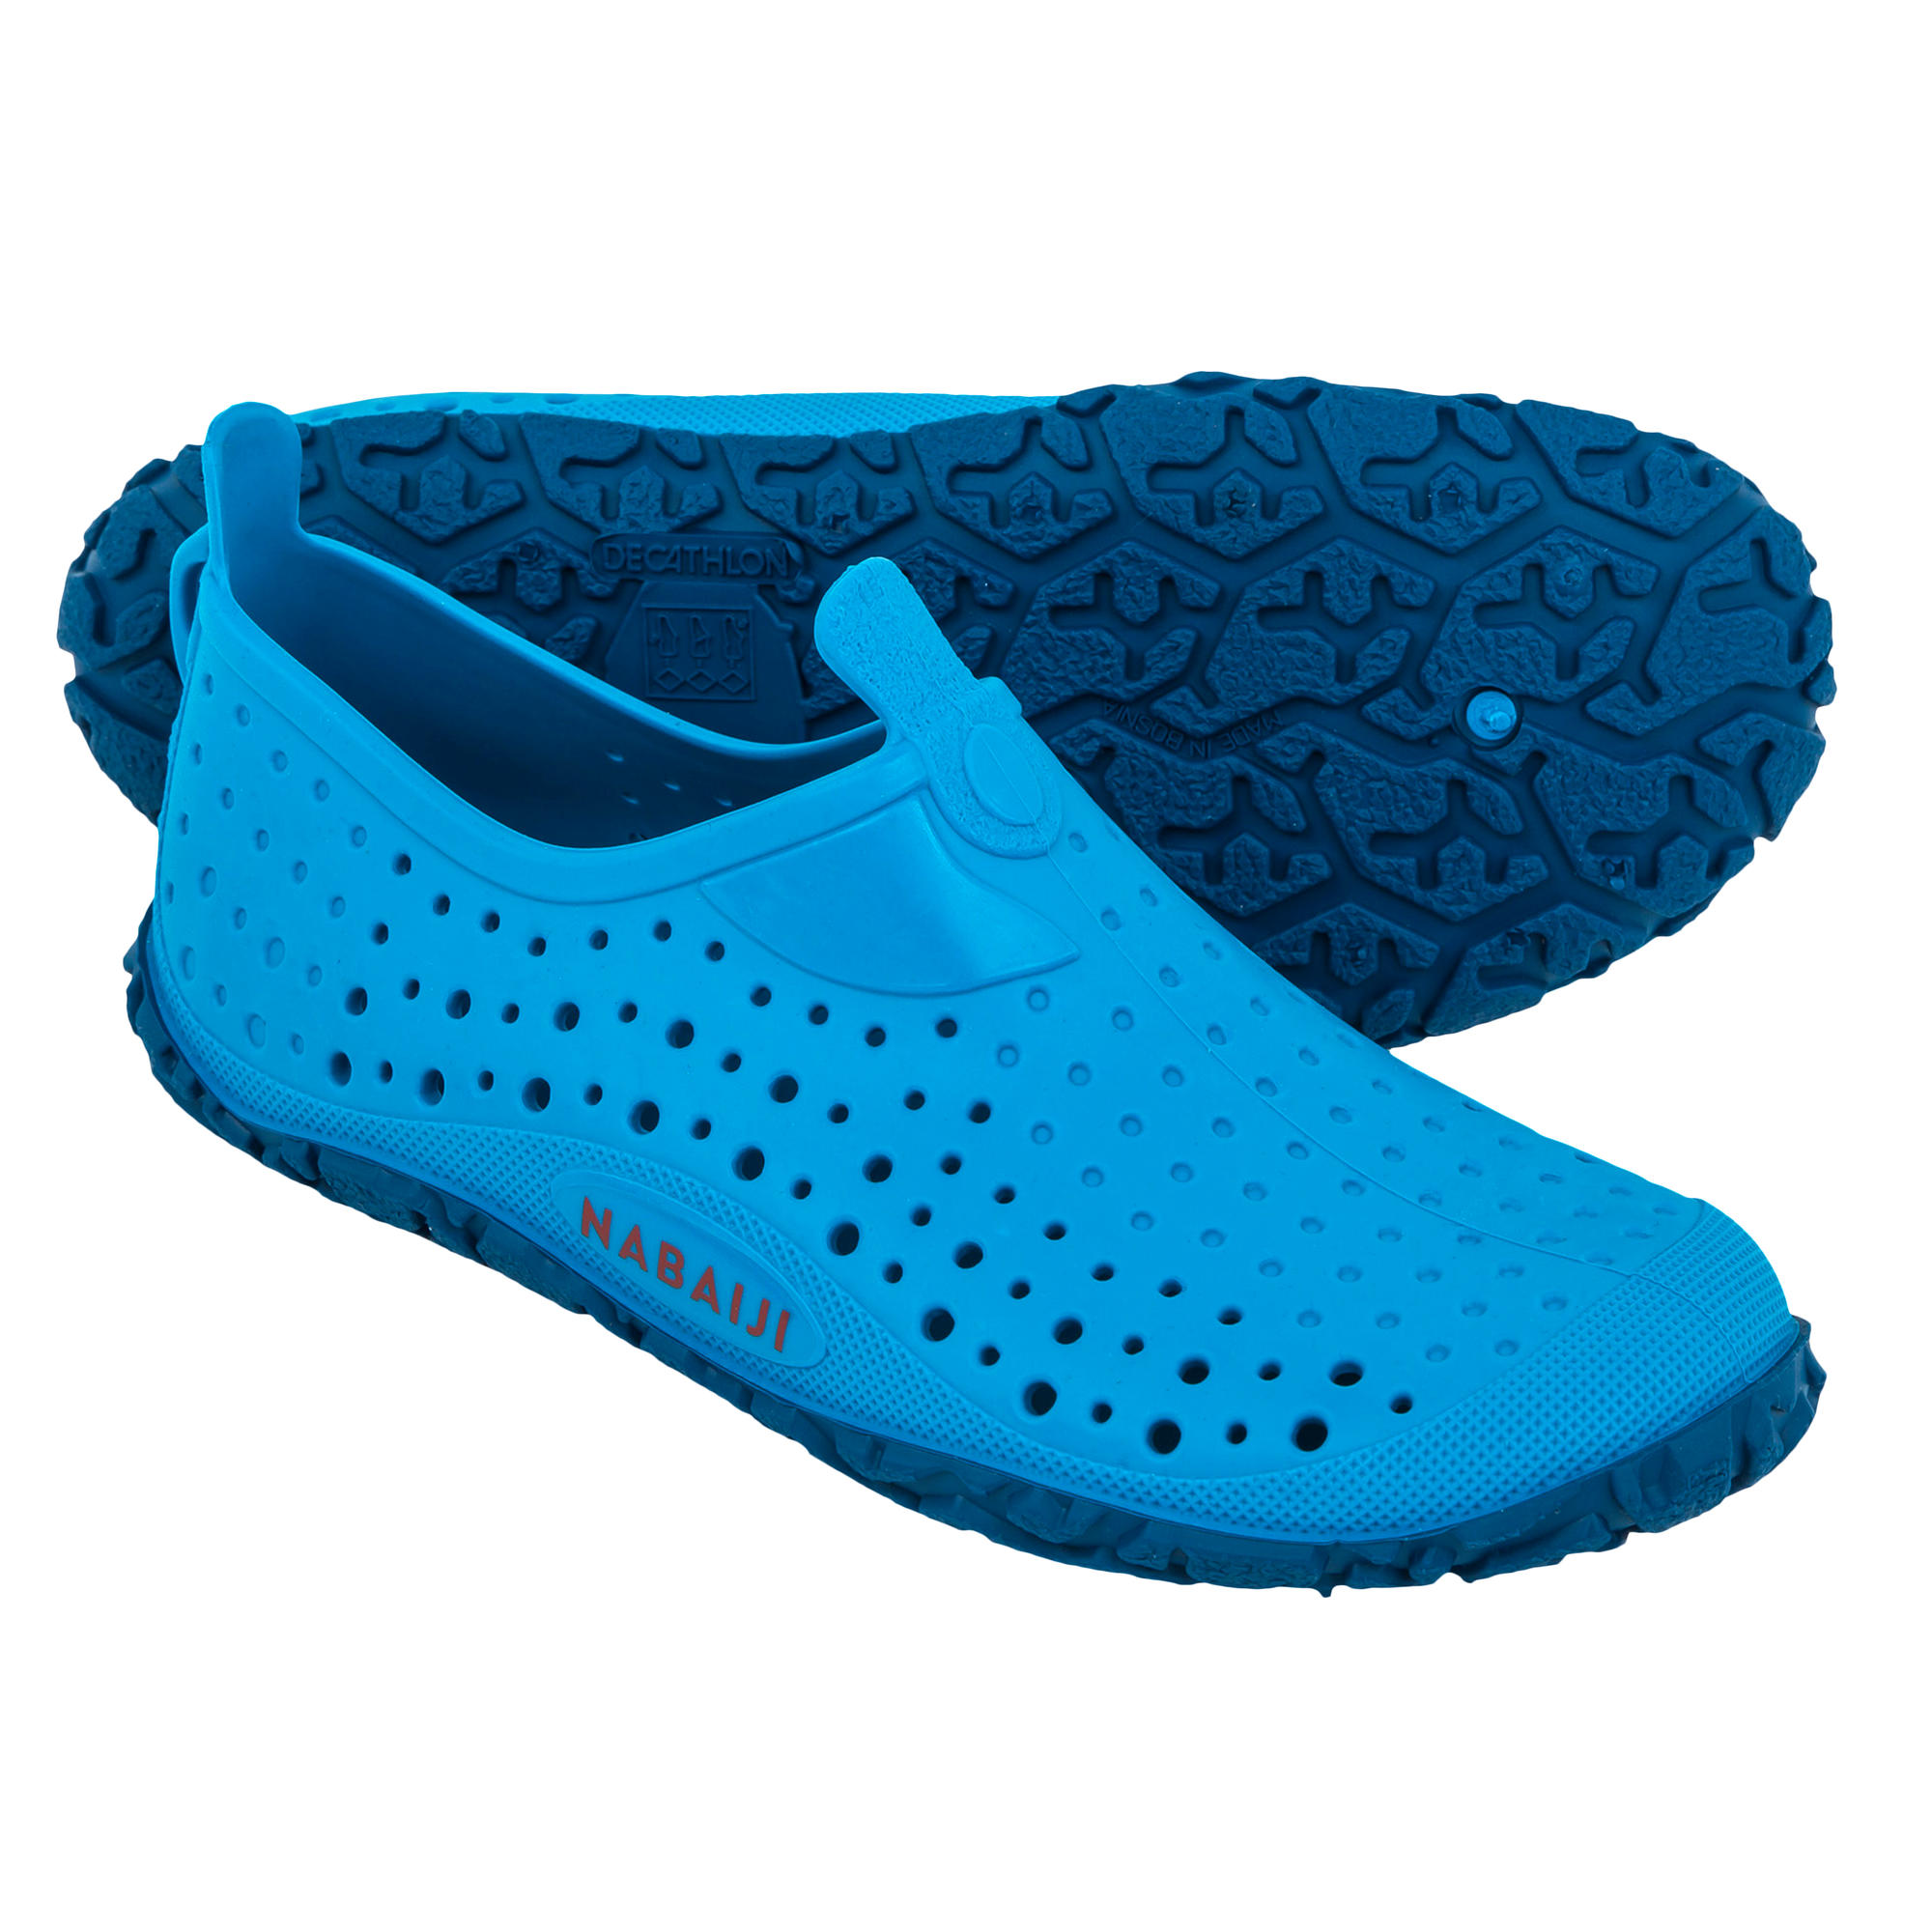 aqua blue shoes